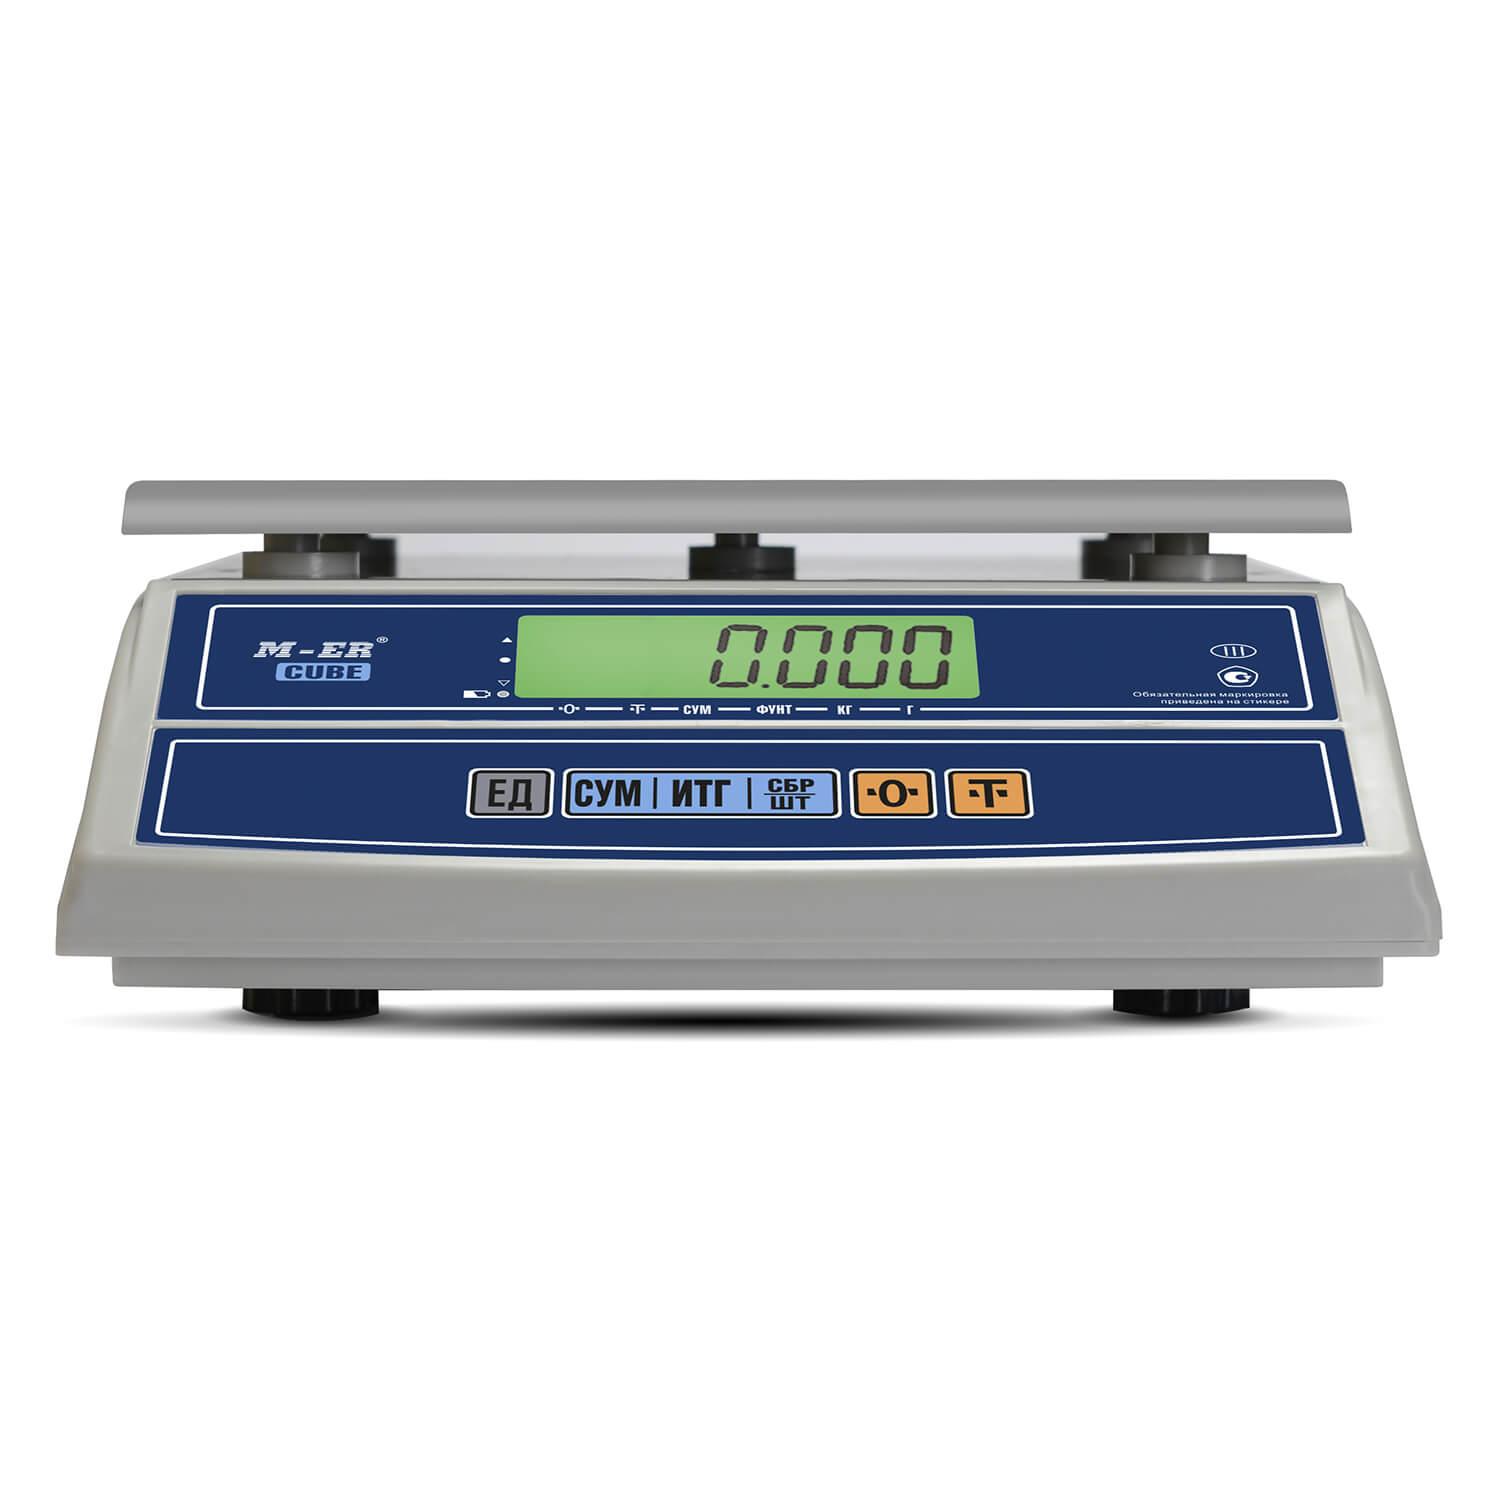 Фасовочные настольные весы M-ER 326 AFL-32.5 "Cube" LCD (3057)